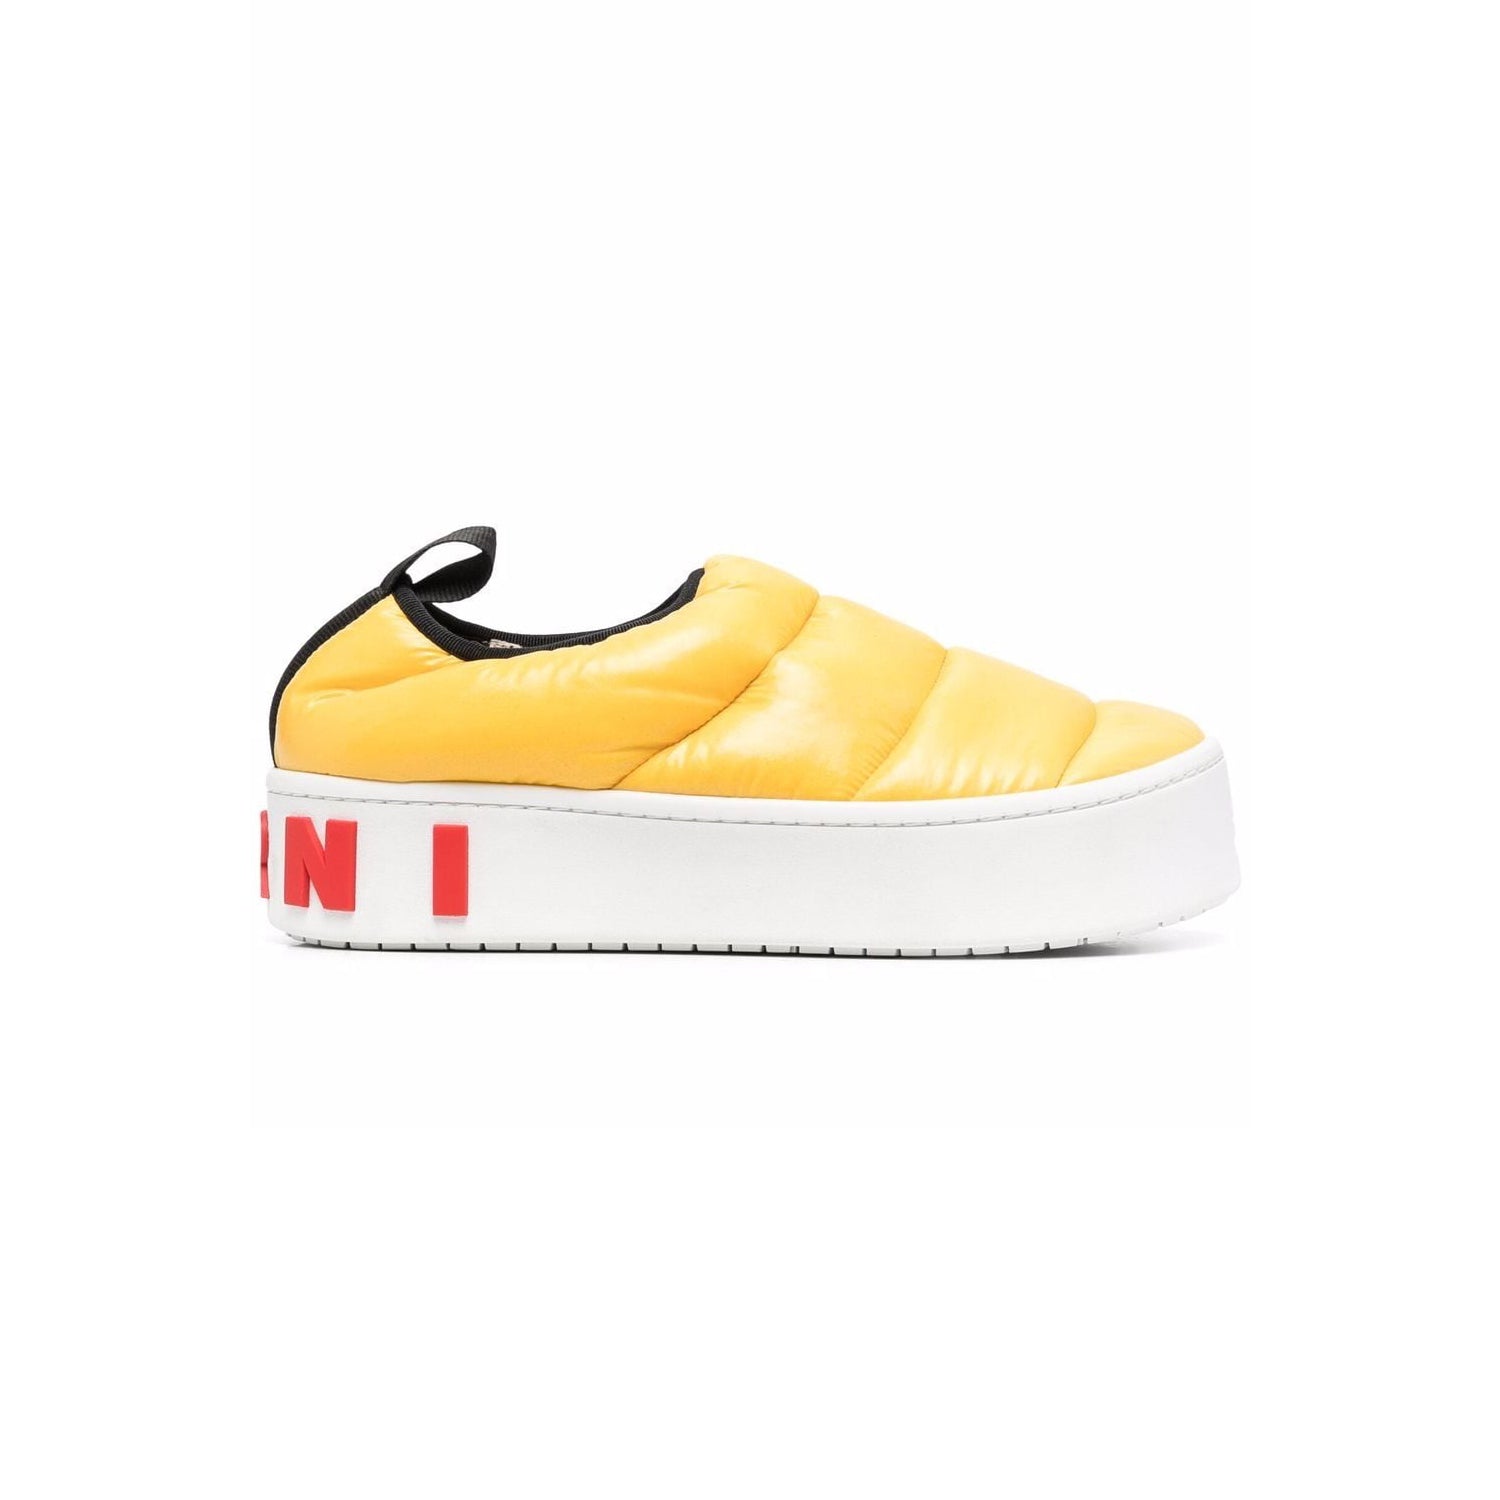 Puffy Padded Nylon Slip On Sneakers (Lemon)